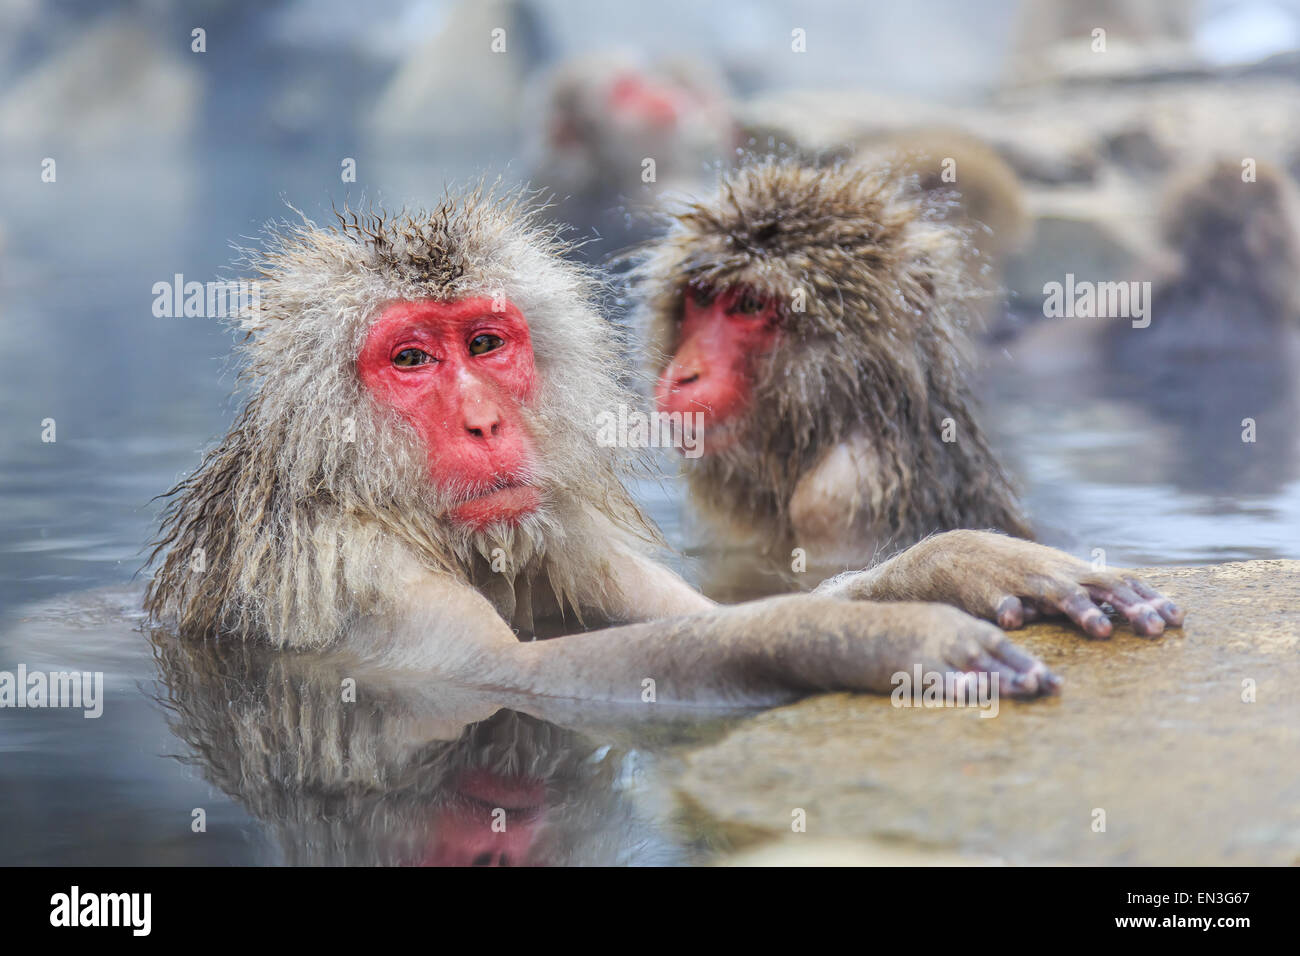 Affen in einem natürlichen Onsen (heiße Quelle), befindet sich in Jigokudani Park, Yudanaka Schnee. Nagano, Japan. Stockfoto